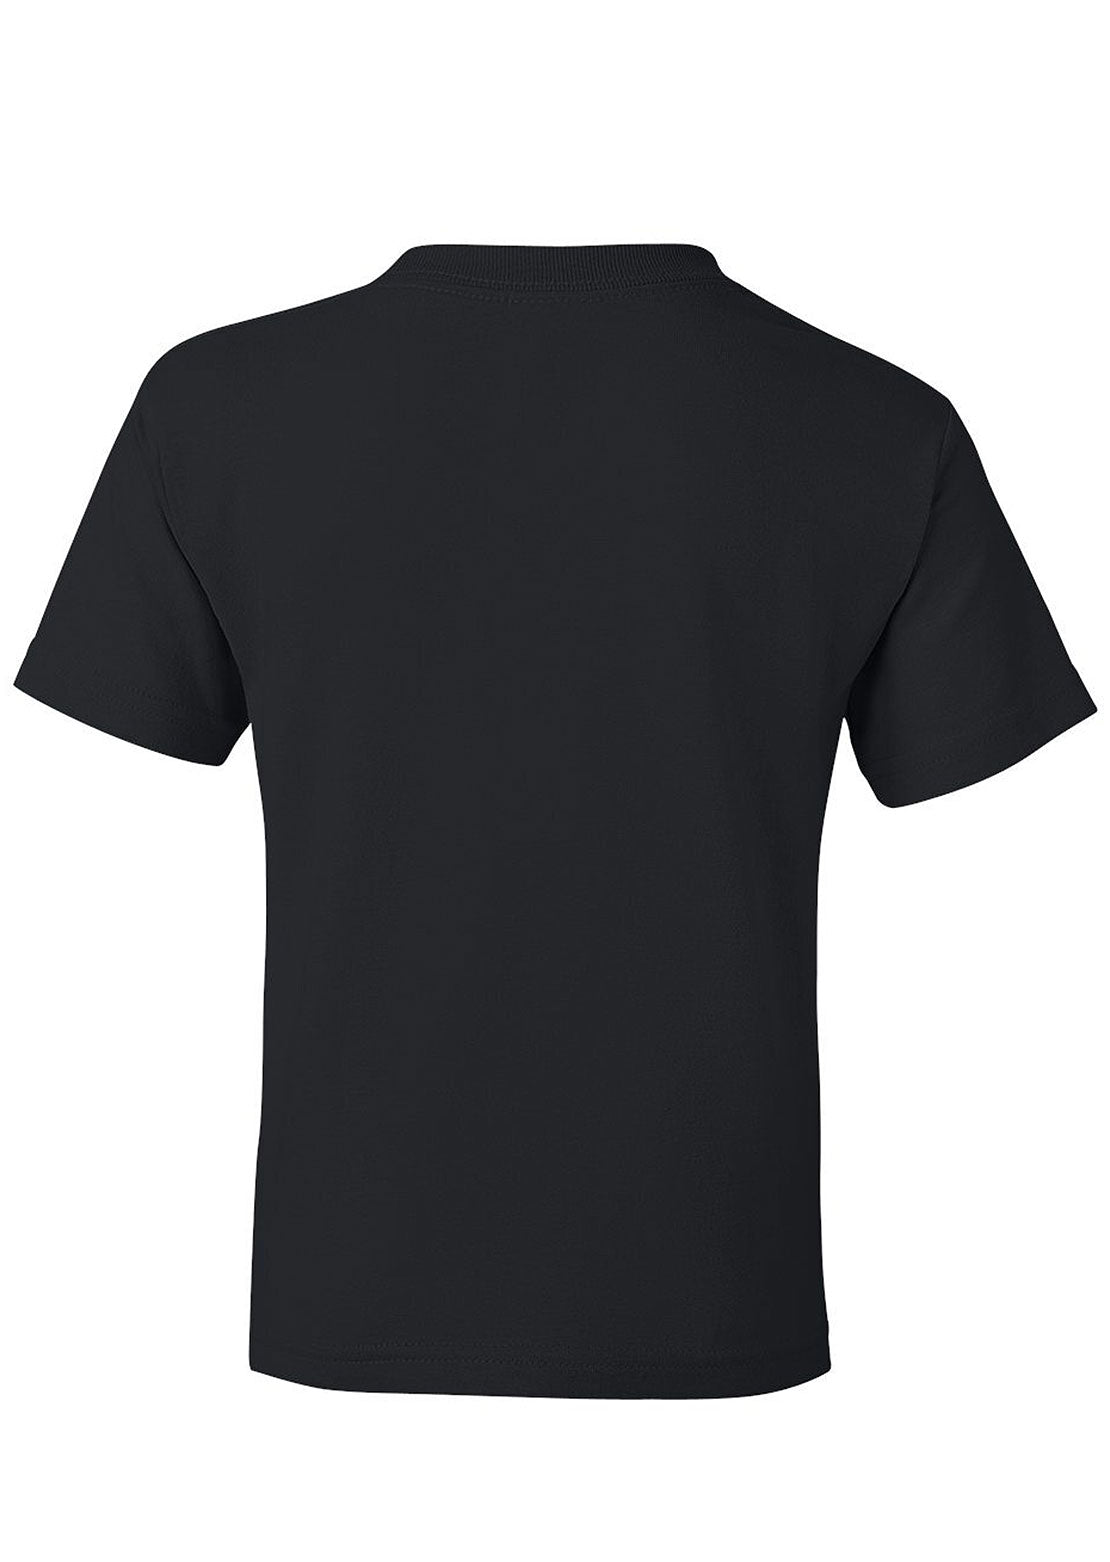 AN-MORIN T-Shirt Junior Black